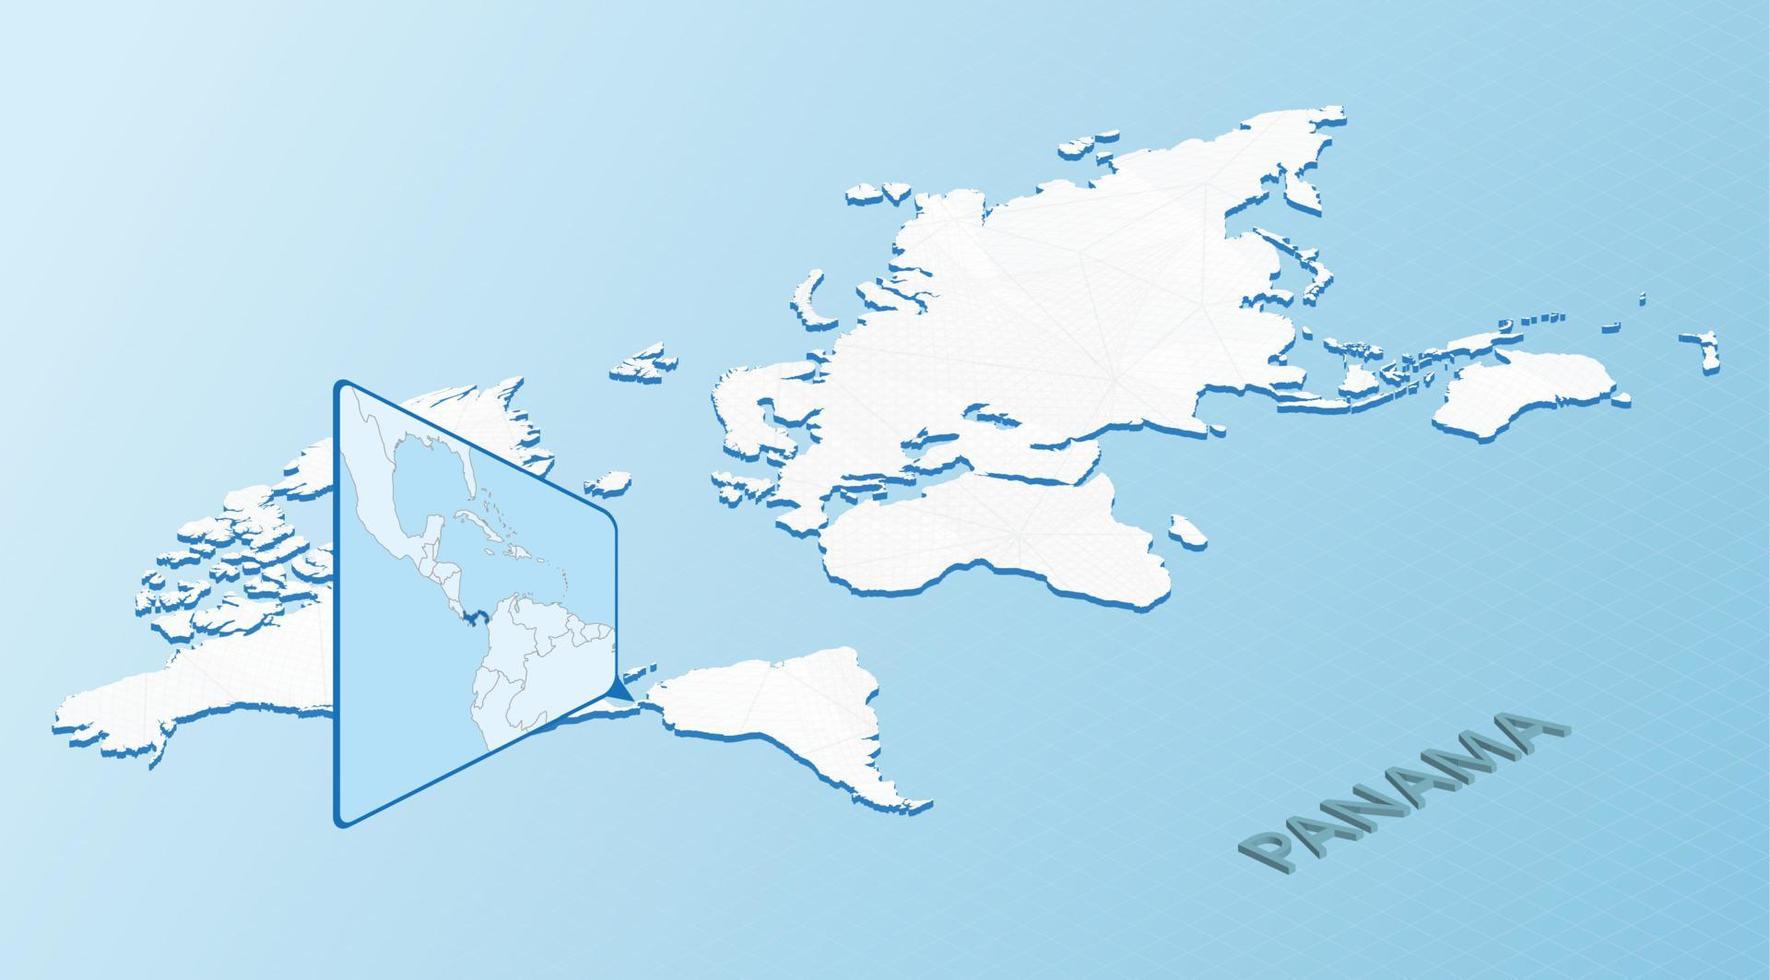 carte du monde dans un style isométrique avec carte détaillée du panama. carte panama bleu clair avec carte du monde abstraite. vecteur